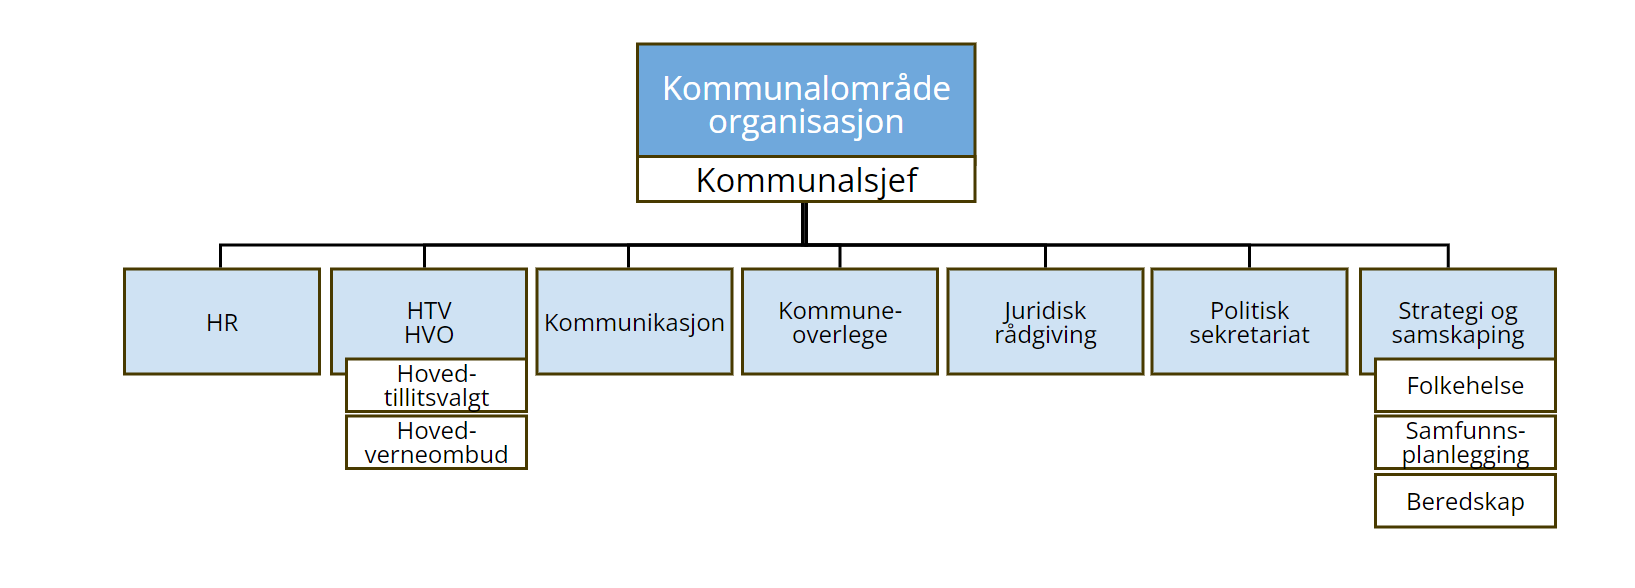 Organisasjonskart kommunalområde organisasjon